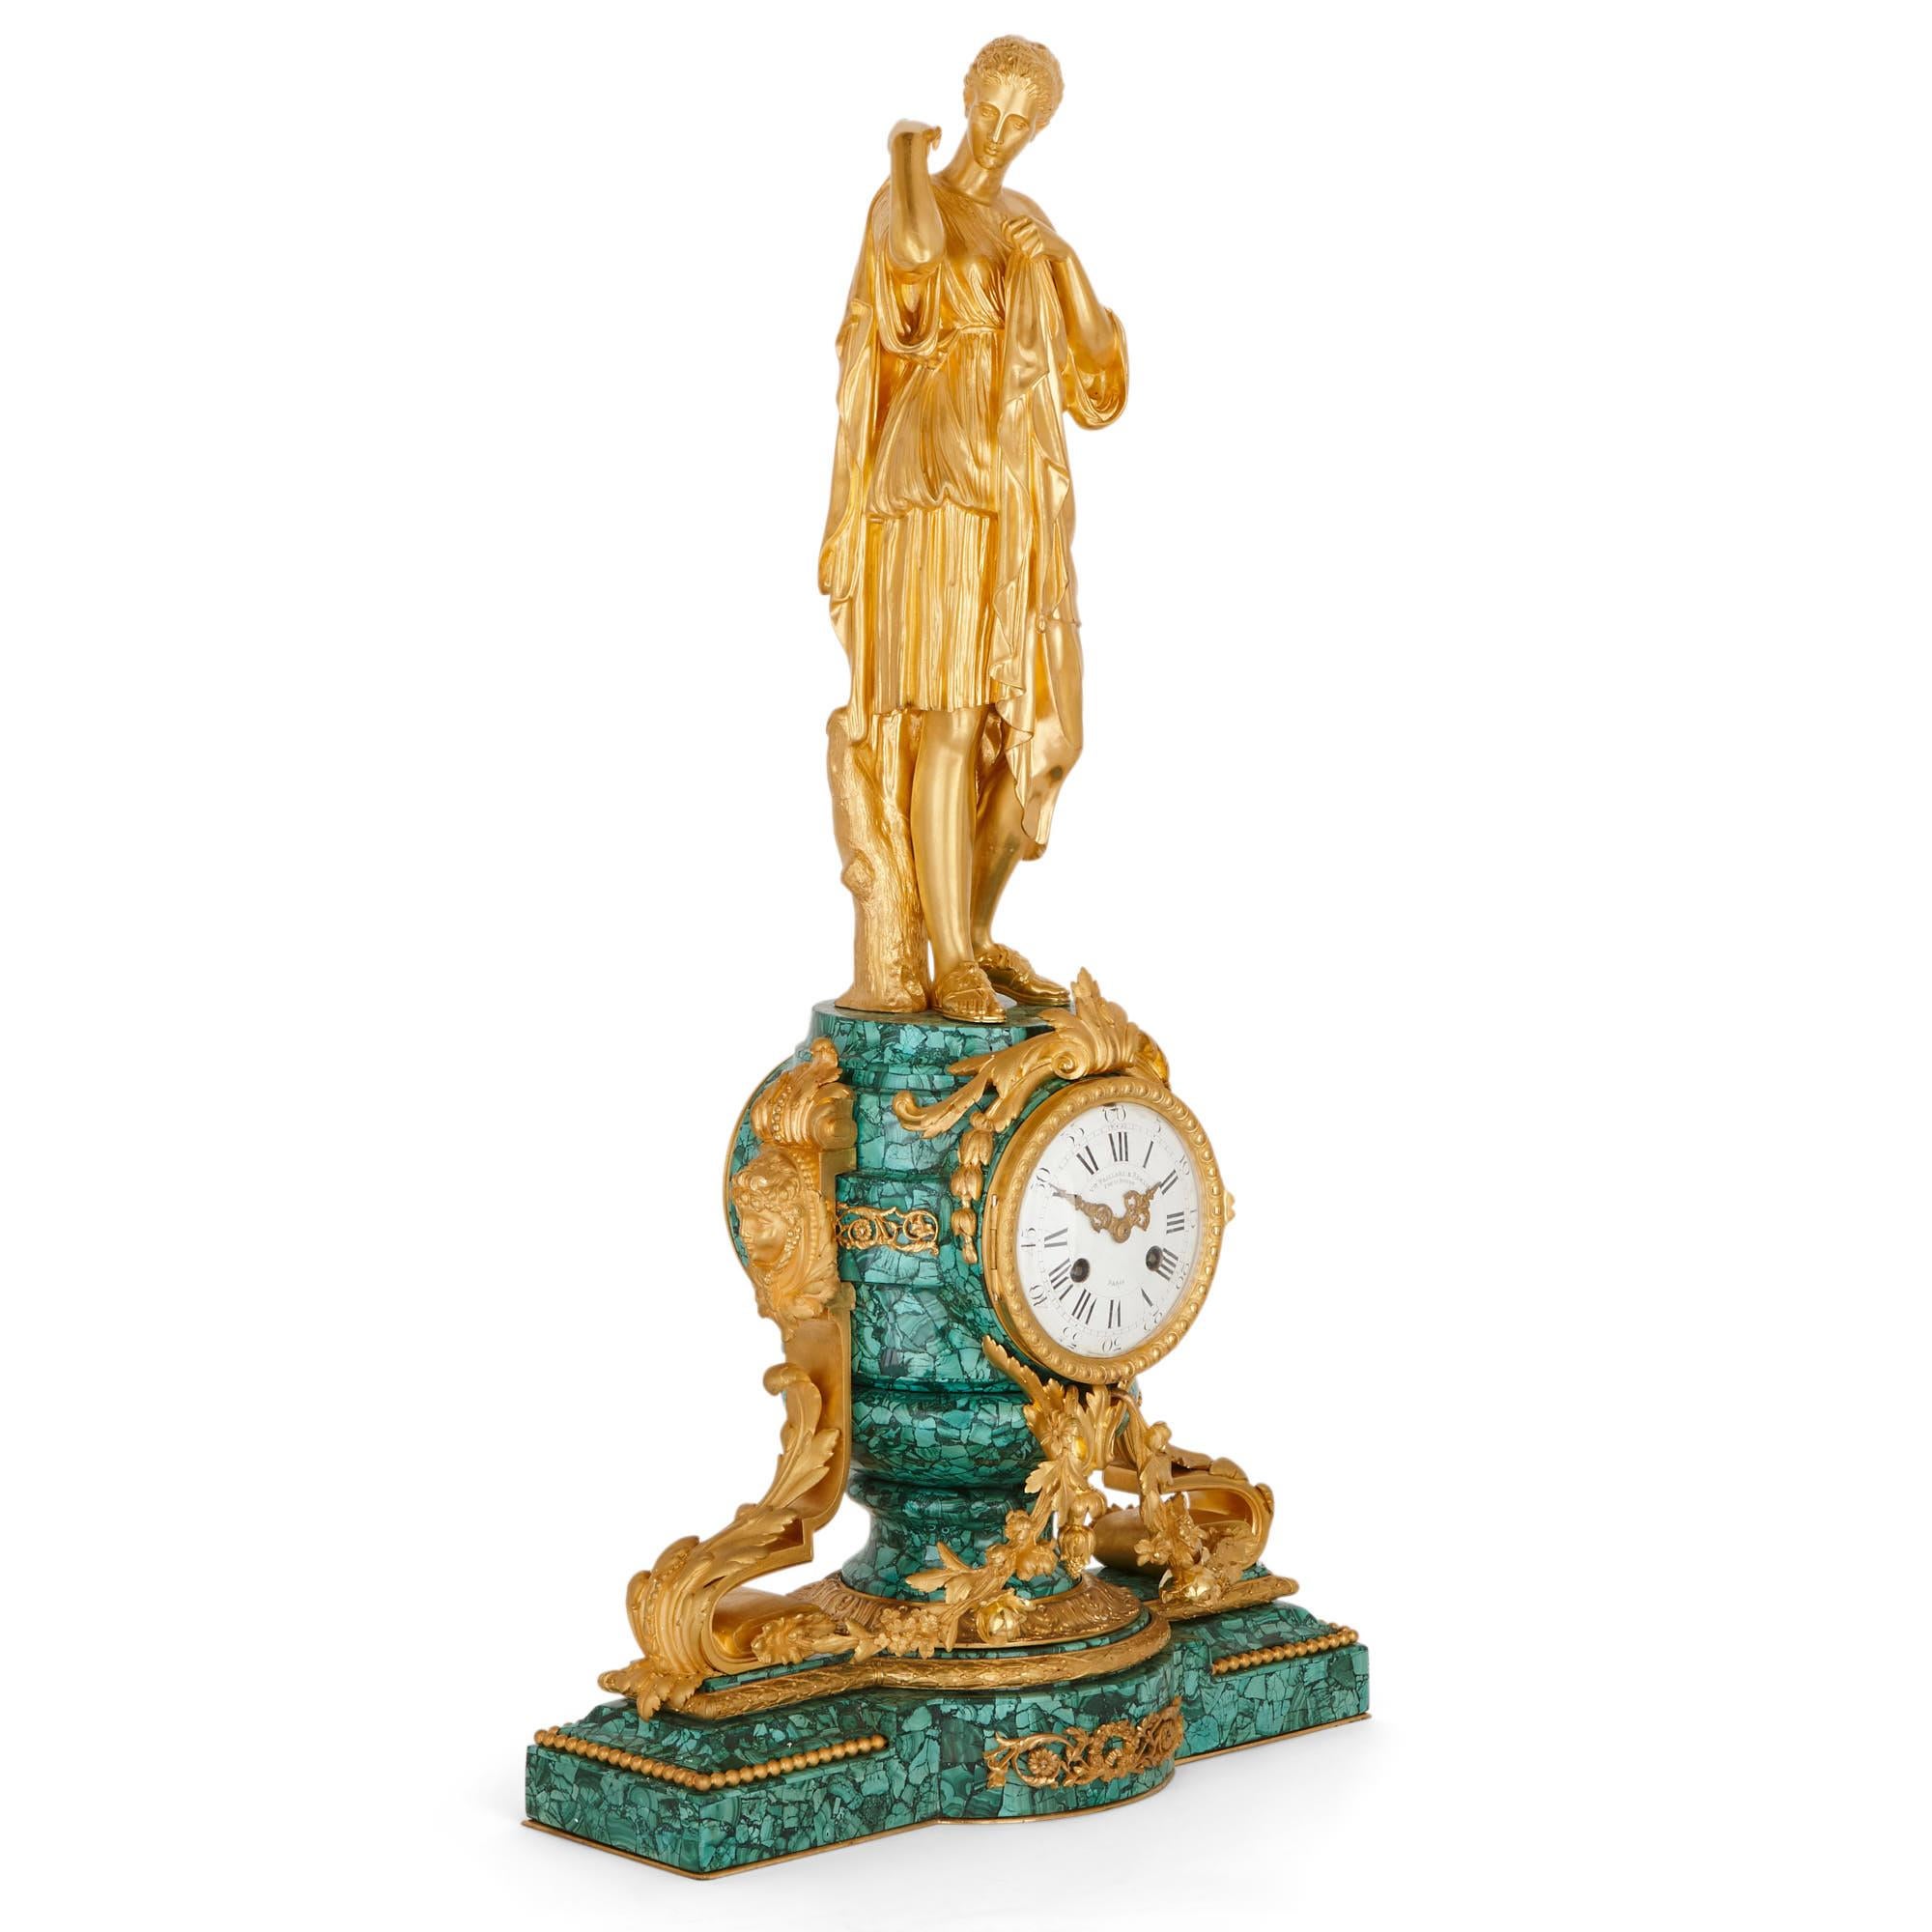 Ce merveilleux ensemble de pendules a été créé en France vers 1870, à la fin du XIXe siècle. L'ensemble, qui se compose d'une horloge de cheminée et d'une paire de candélabres, est réalisé en bronze doré (ormolu) et en malachite, une pierre